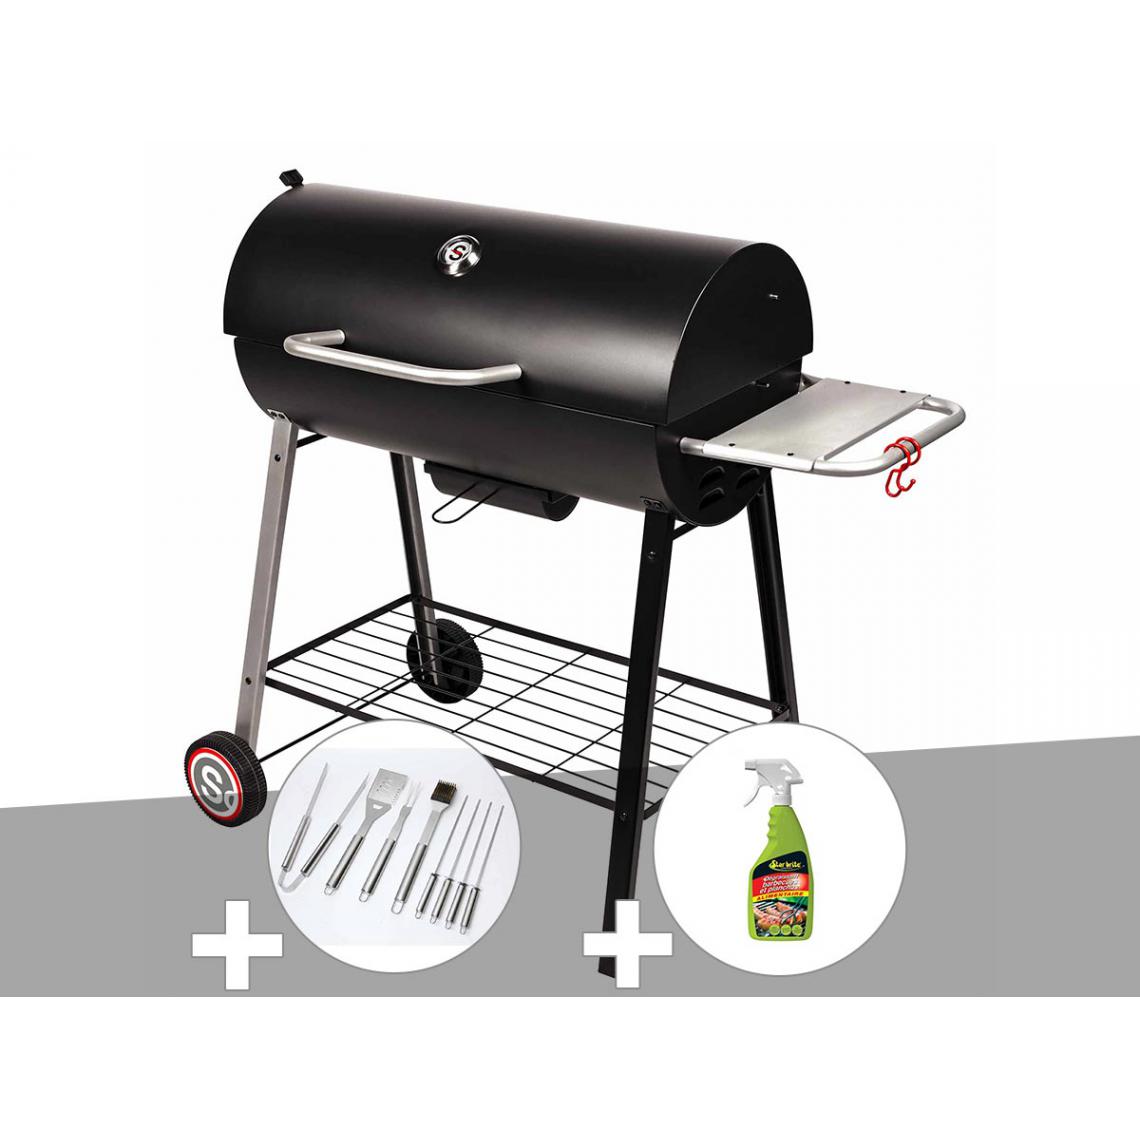 Somagic - Barbecue à charbon sur chariot Michigan - Somagic + Malette de 8 accessoires inox + Dégraissant pour barbecue - Barbecues charbon de bois